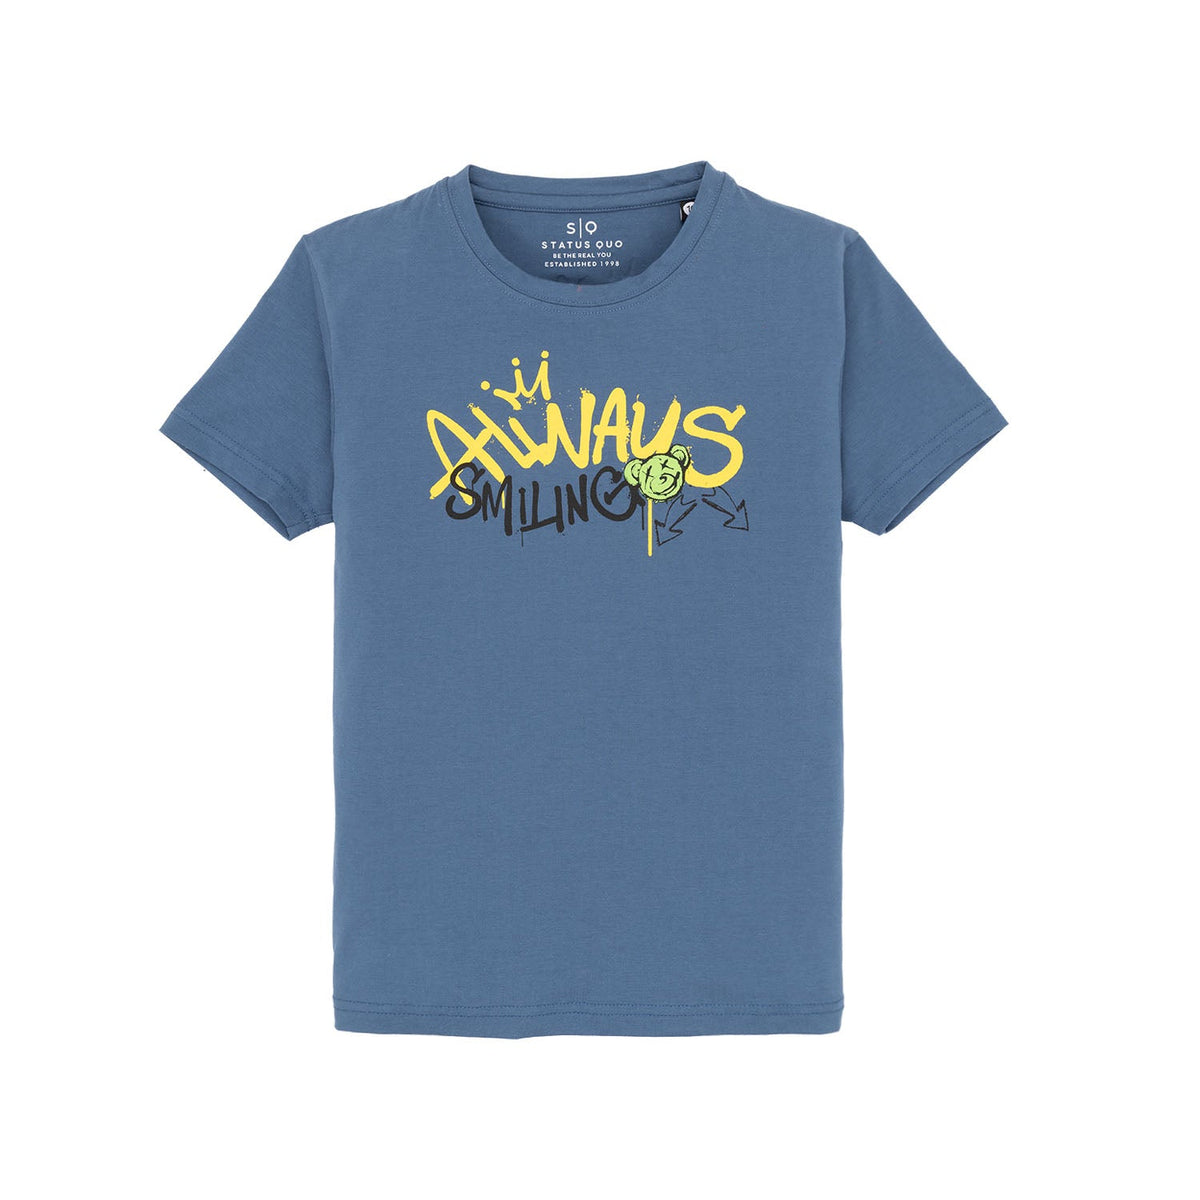 Status Quo |Kids T-shirt - 4, 6, 8, 10, 12, 14, 16